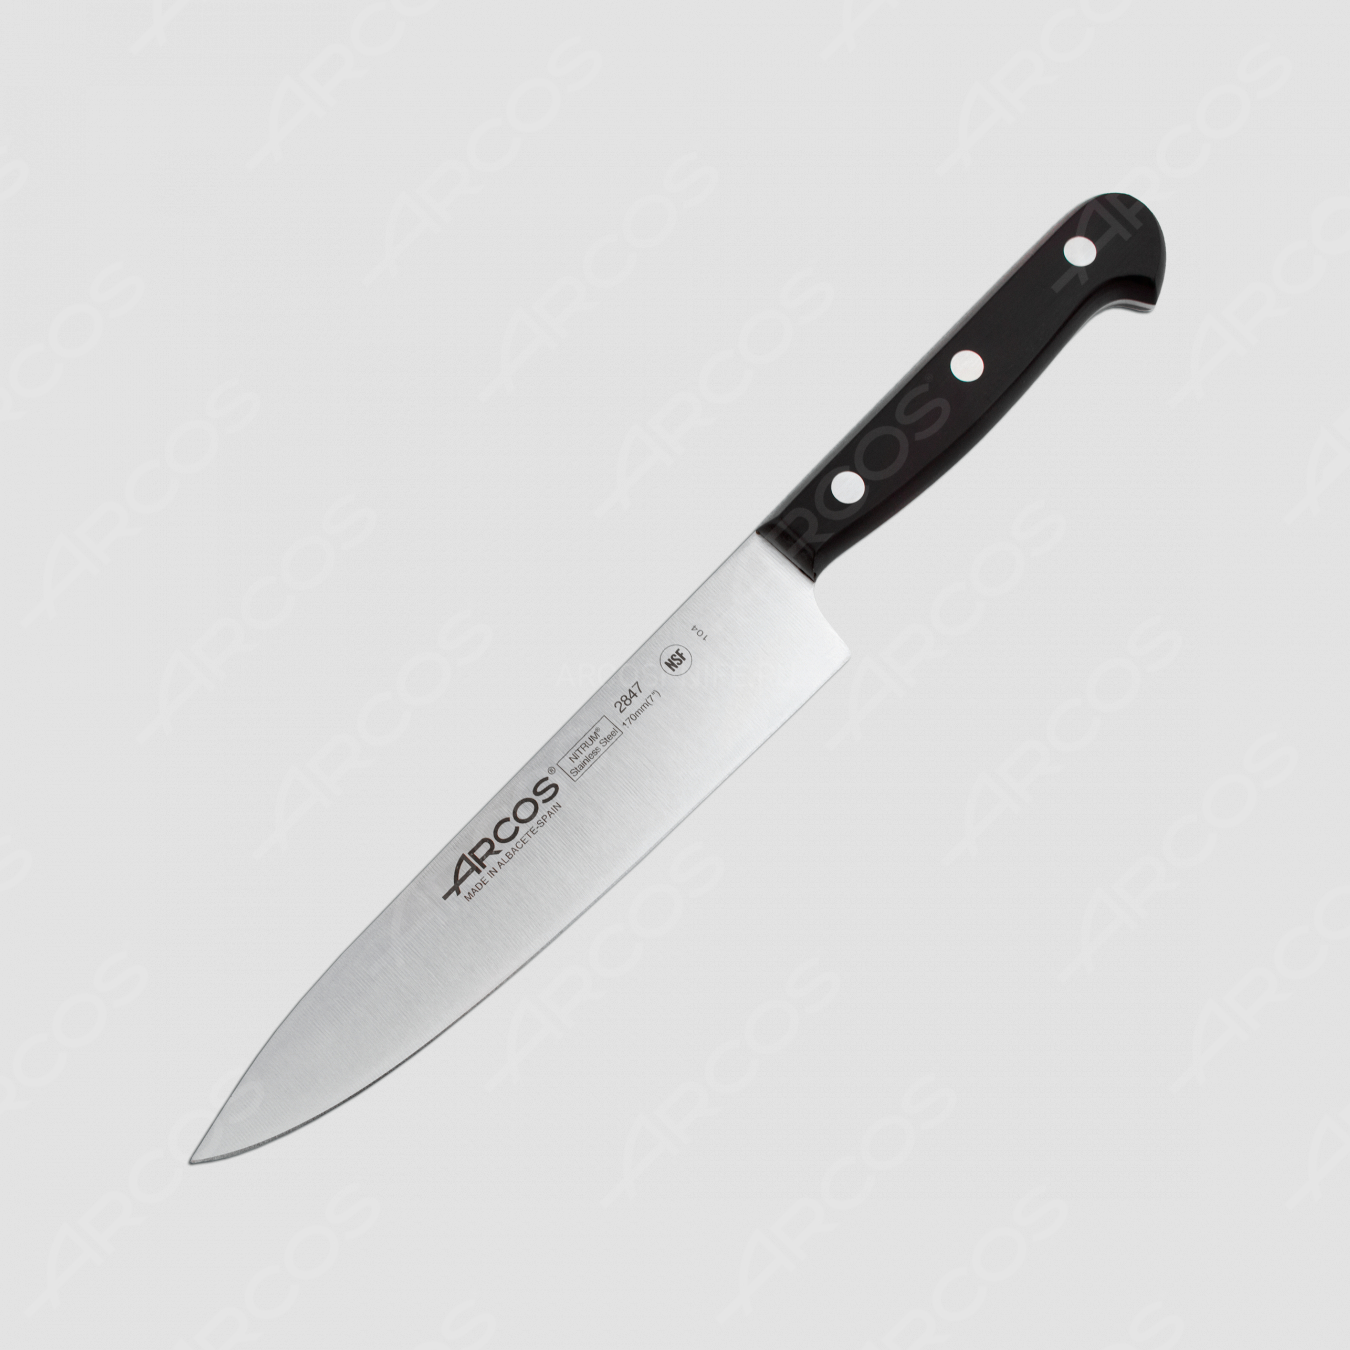 Профессиональный поварской кухонный нож 17 см, серия Universal, ARCOS, Испания